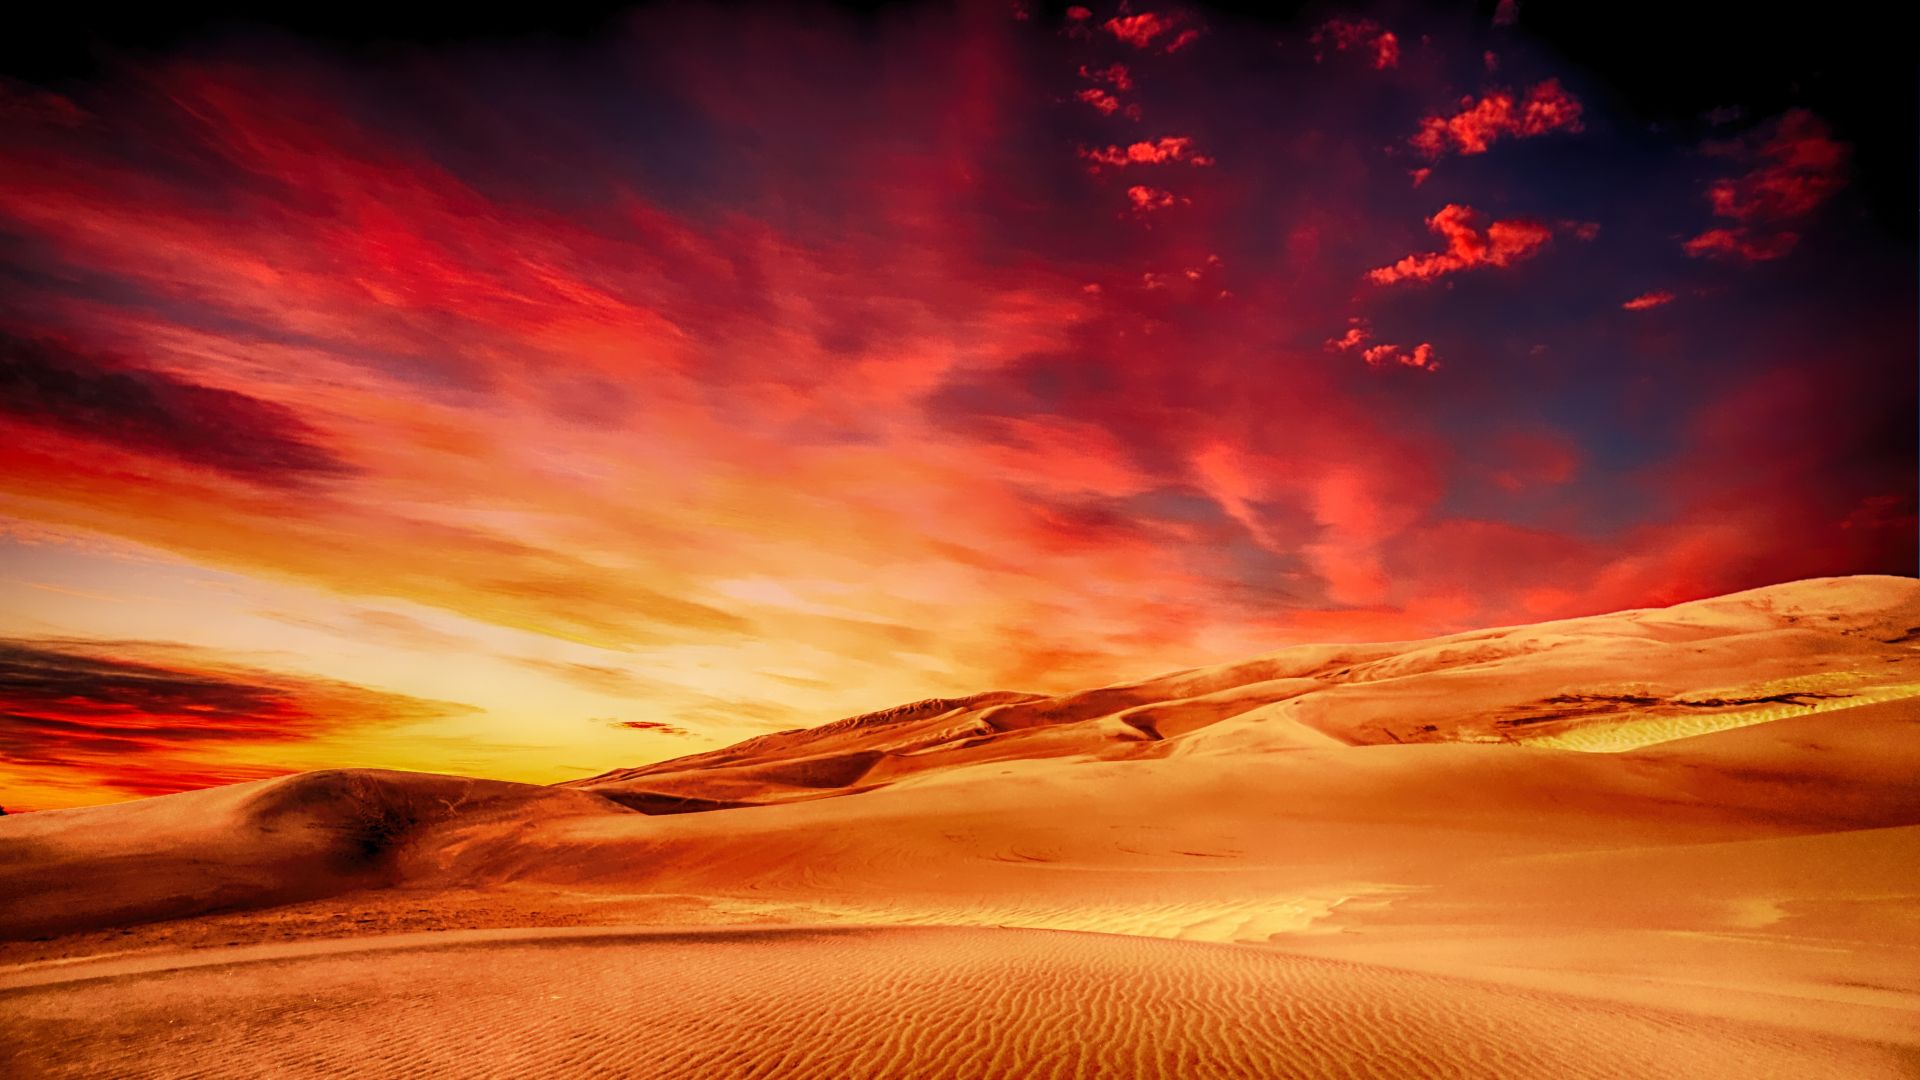 Desktop Wallpaper Desert Sunset Skyline Clouds Dunes Hd Image